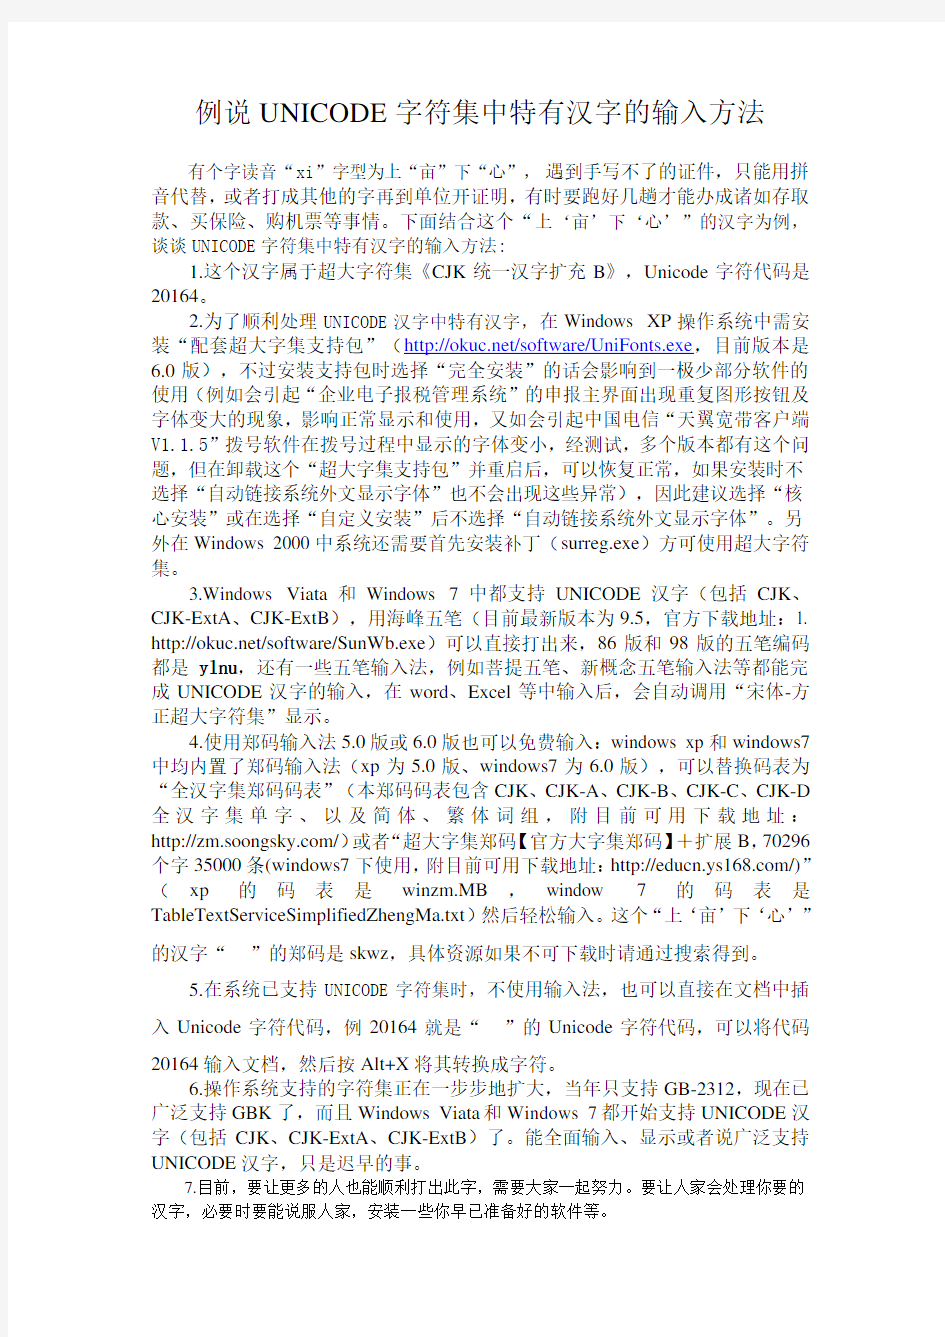 UNICODE字符集中特有汉字的输入方法